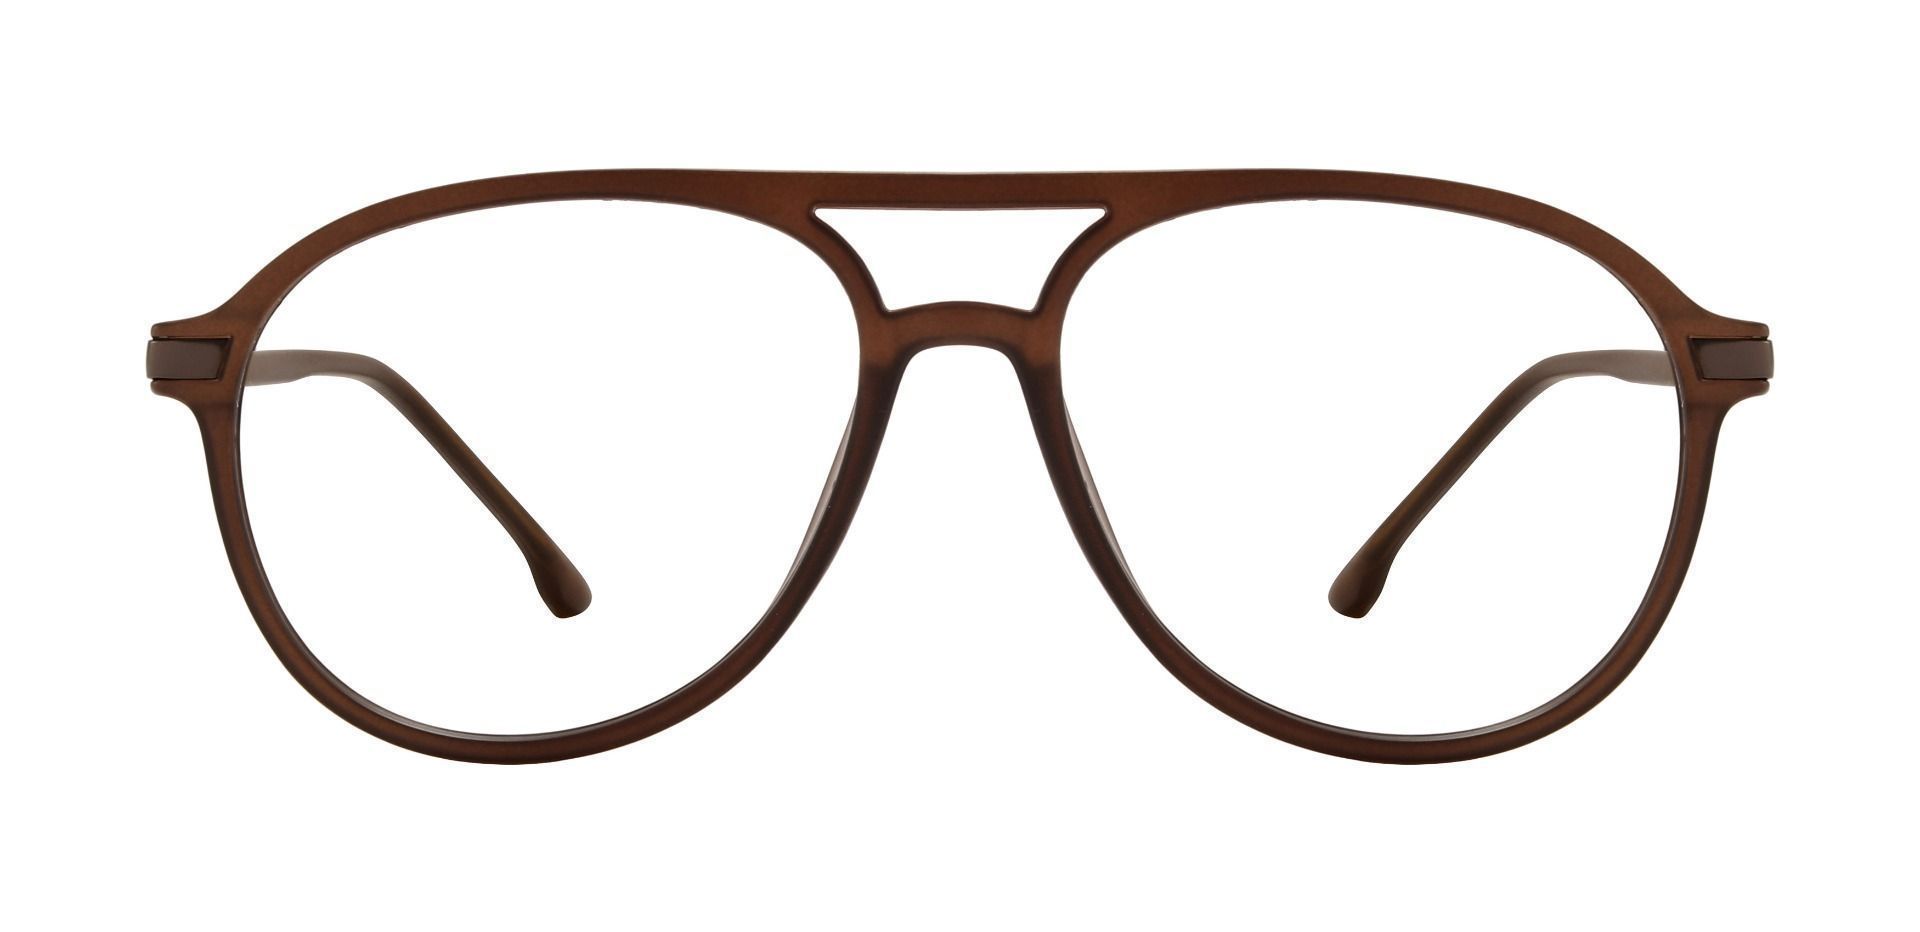 Bigelow Aviator Prescription Glasses - Brown